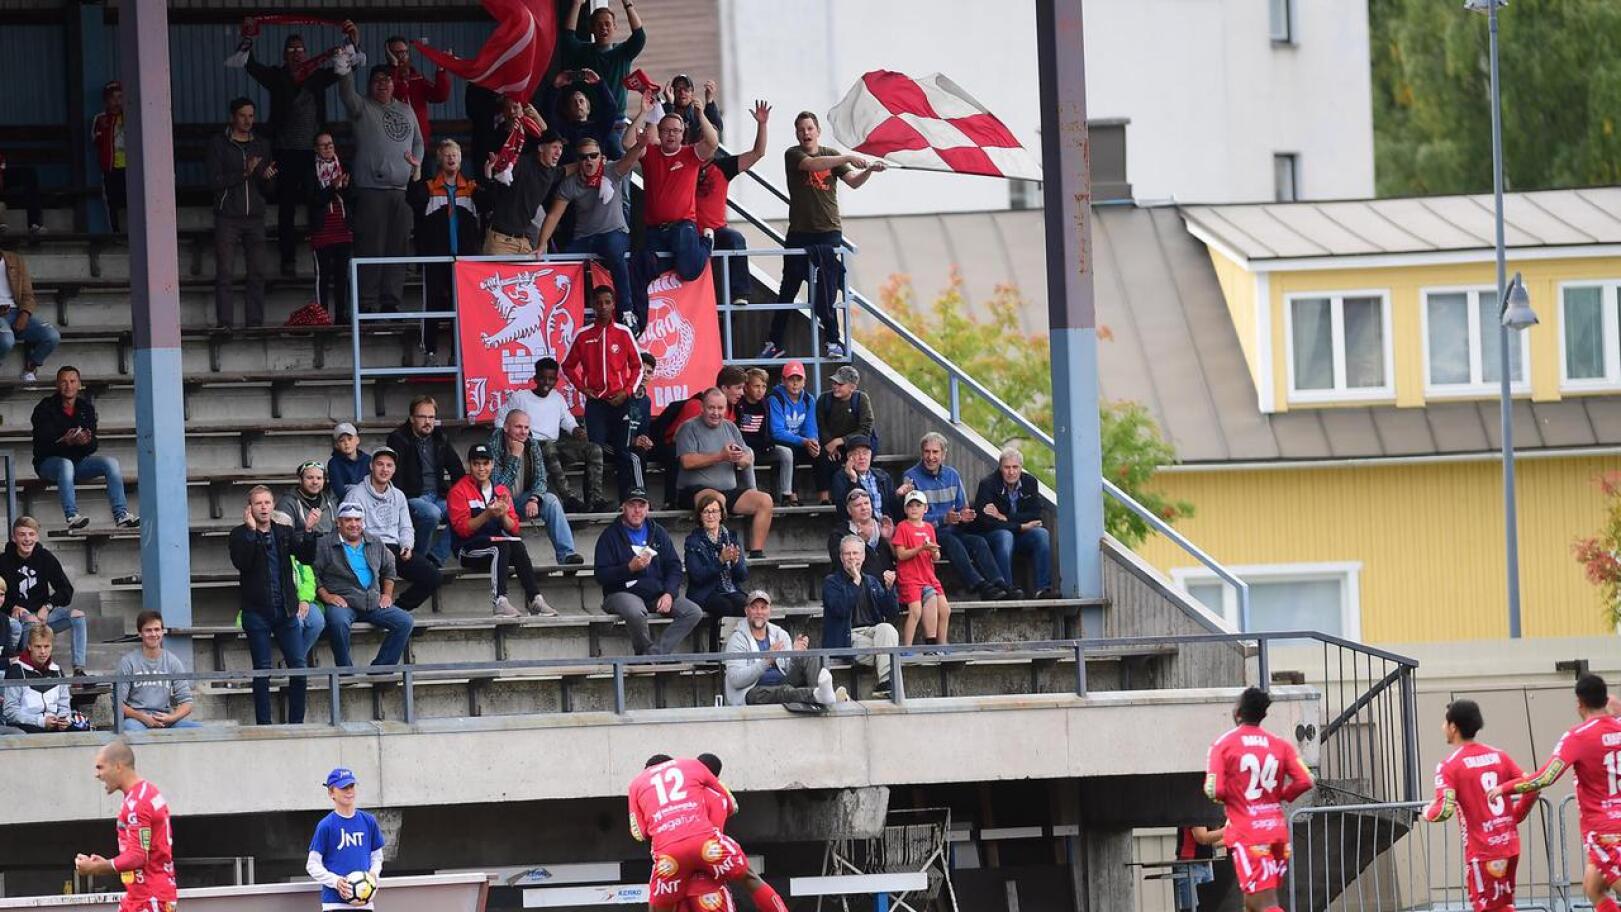 Kauden kolmannessa Rantaderbyssä oli punaisten vuoro juhlia. Jaro voitti kotikentällään KPV:n maalein 3-0.